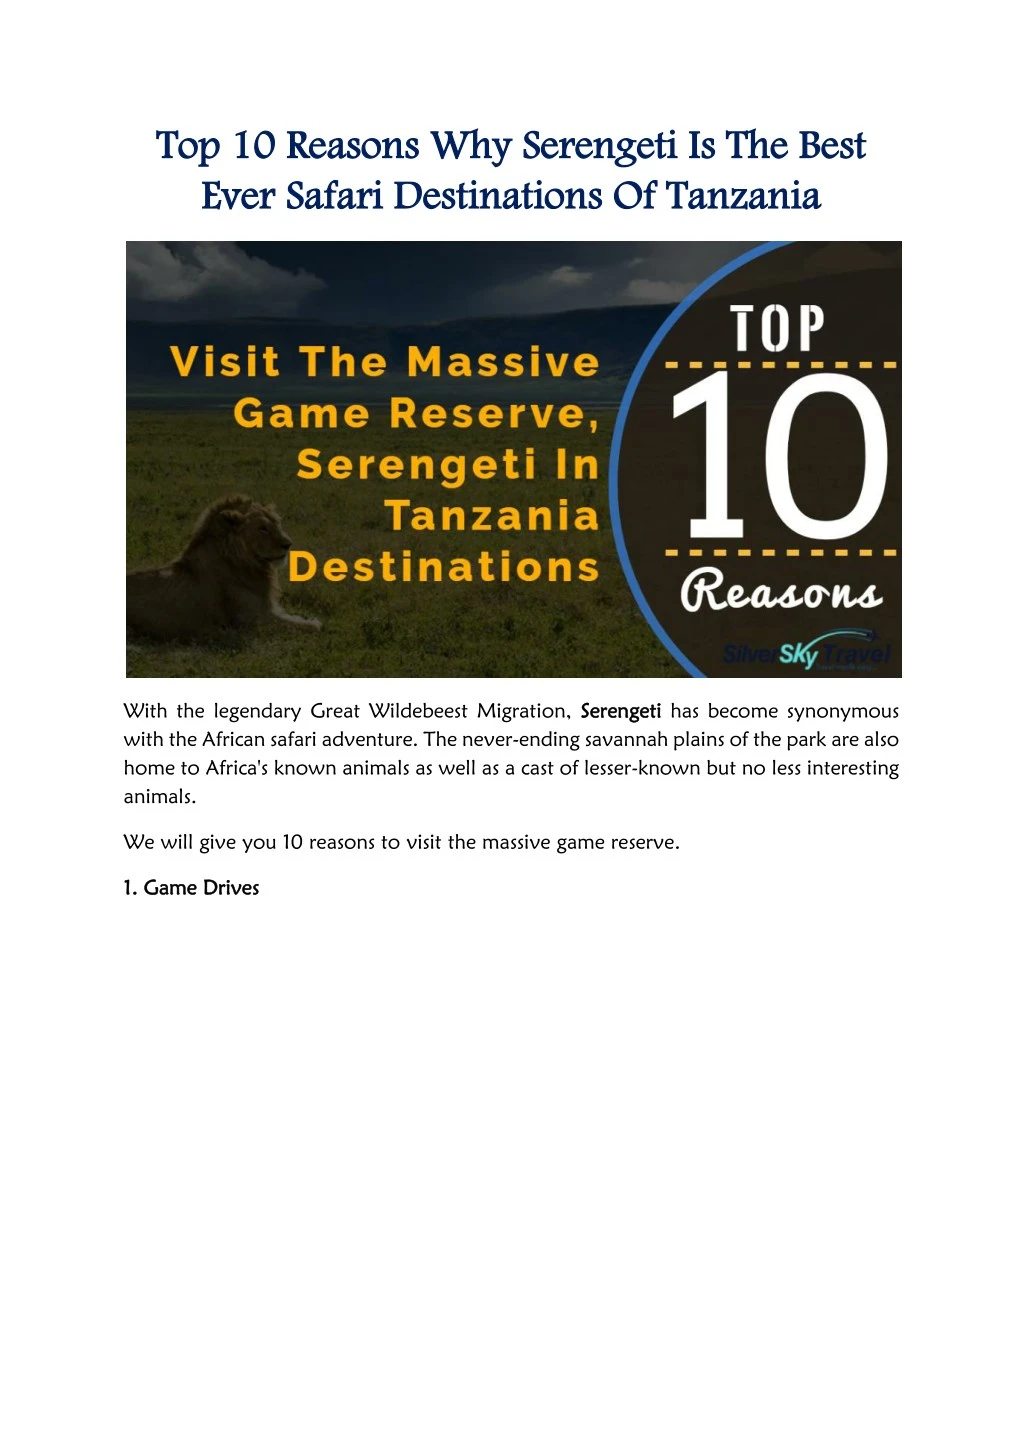 top 10 reasons top 10 reasons why serengeti